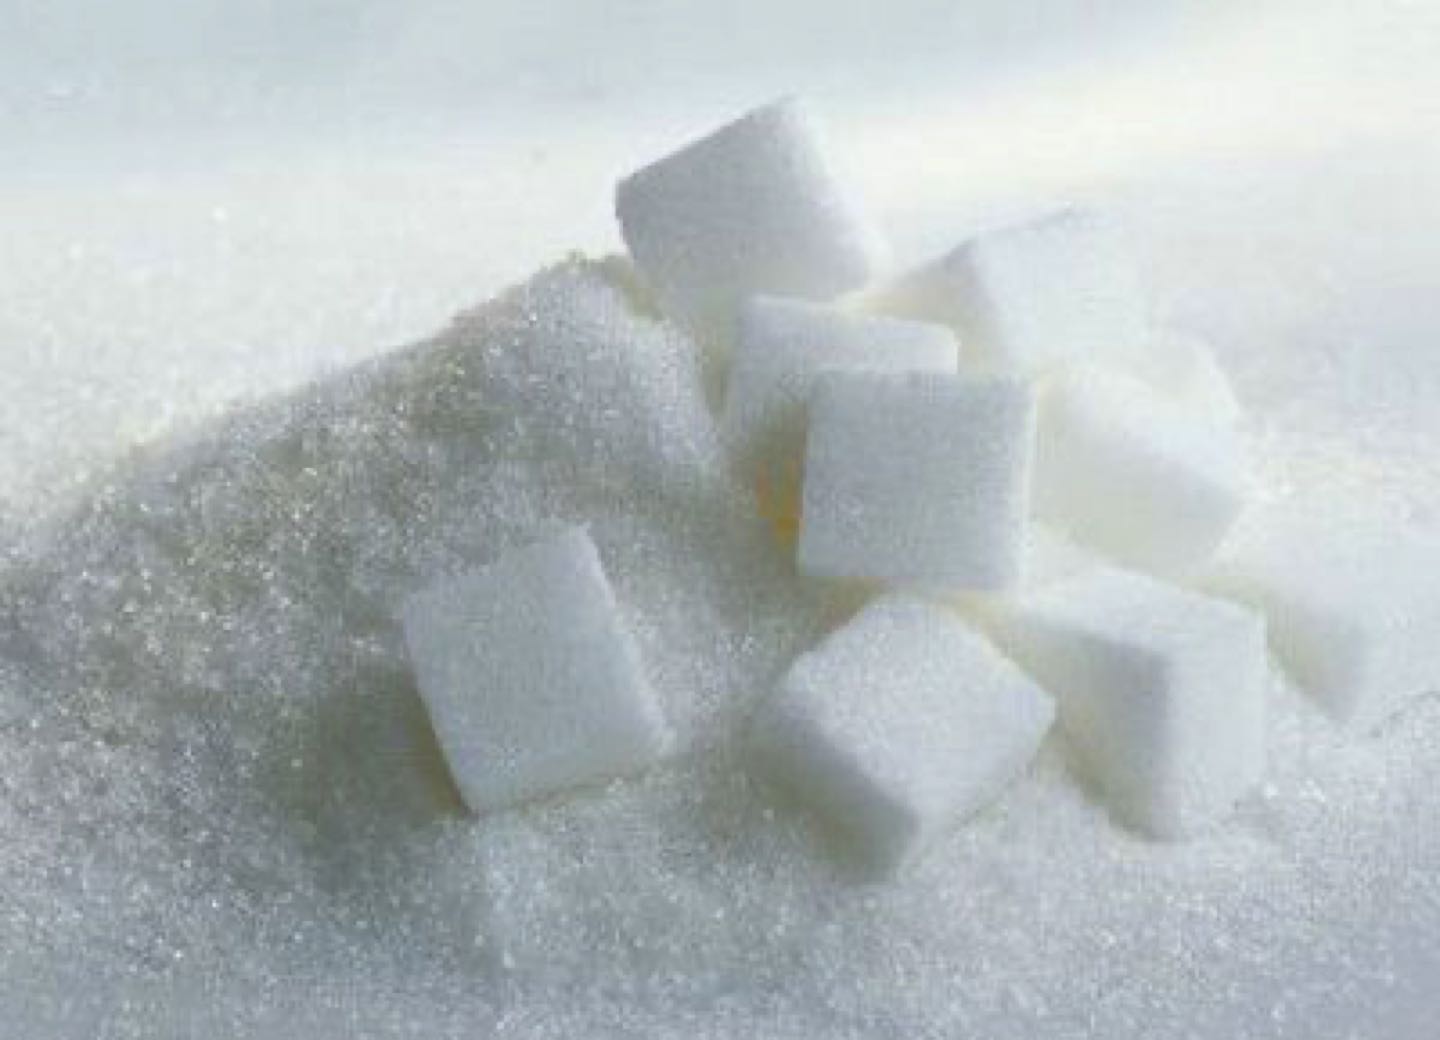 reasons for reduce sugar intake